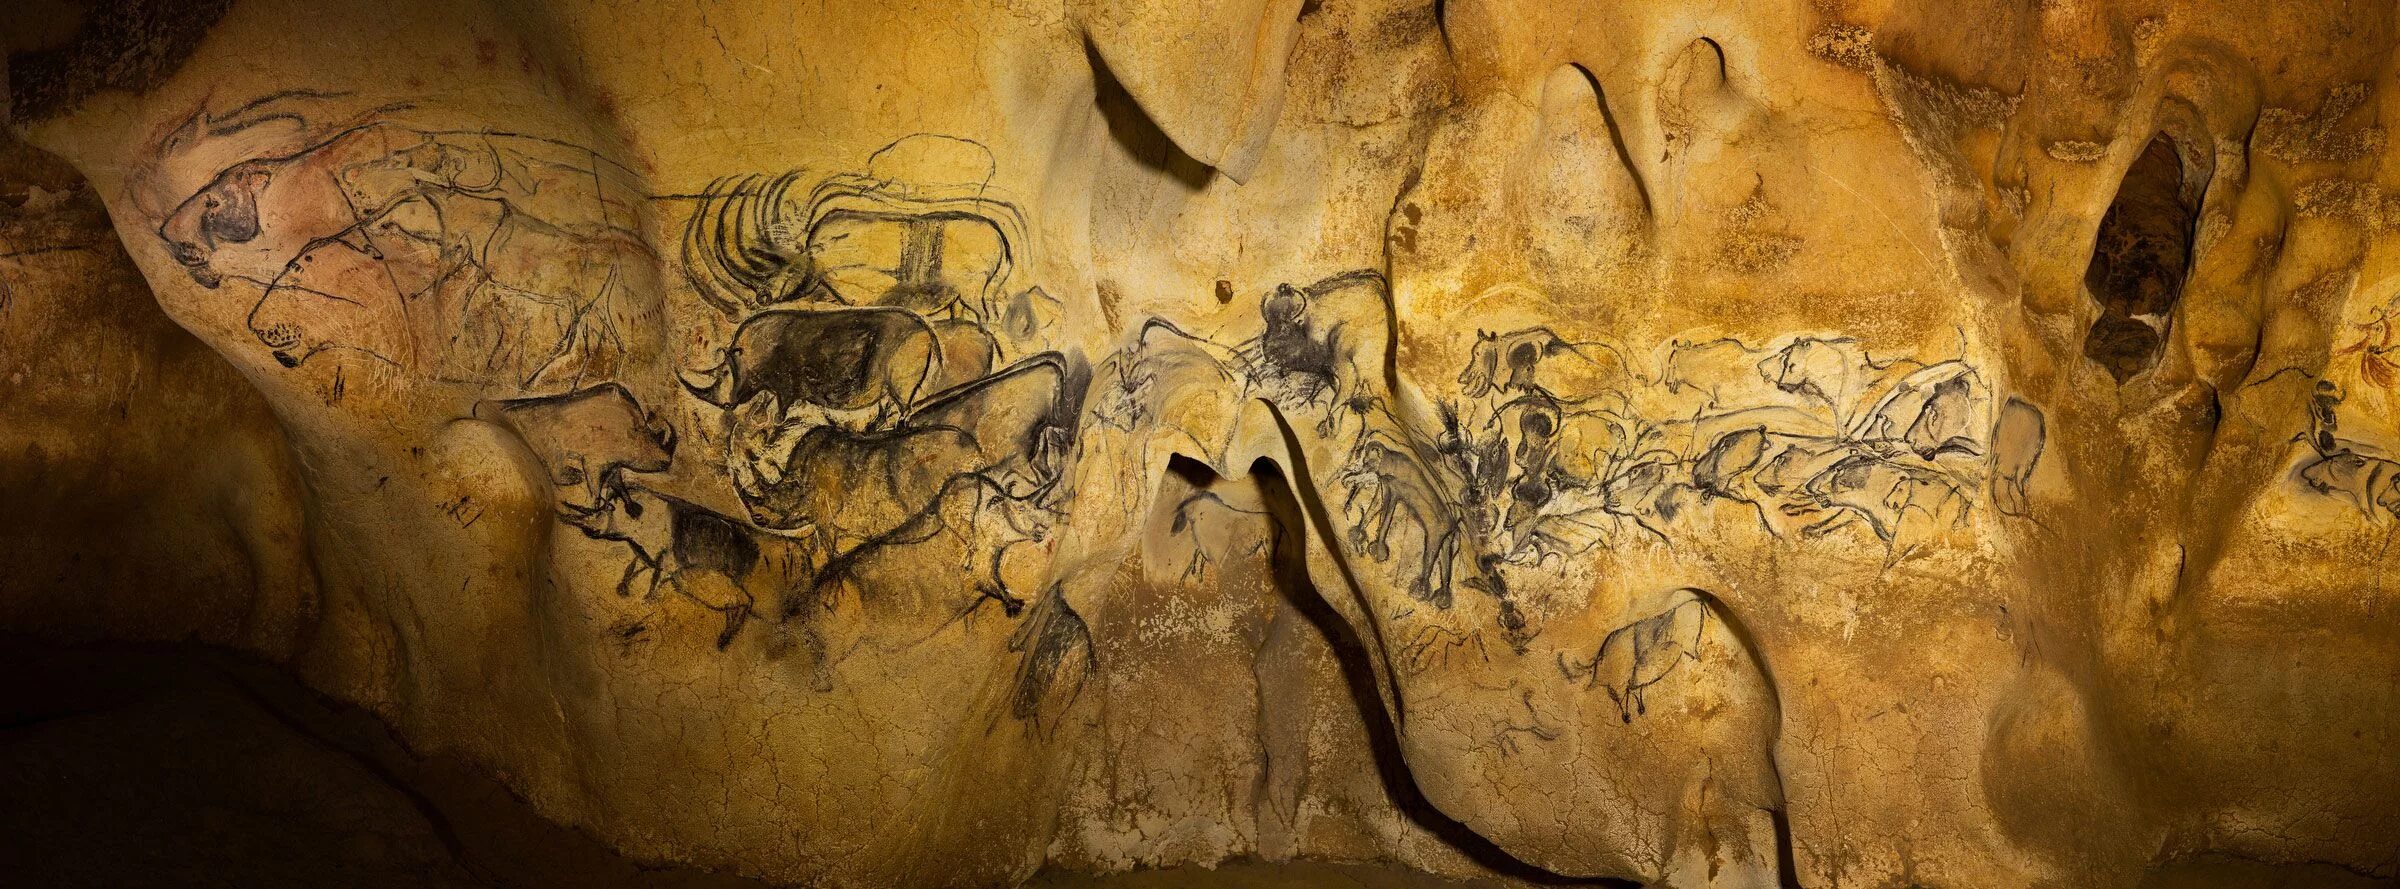 Пещера Ласко зал Быков. Пещера фон де Гом Наскальная живопись. Пещера Ласко кошачий зал. Пещера Ориньяк Франция.